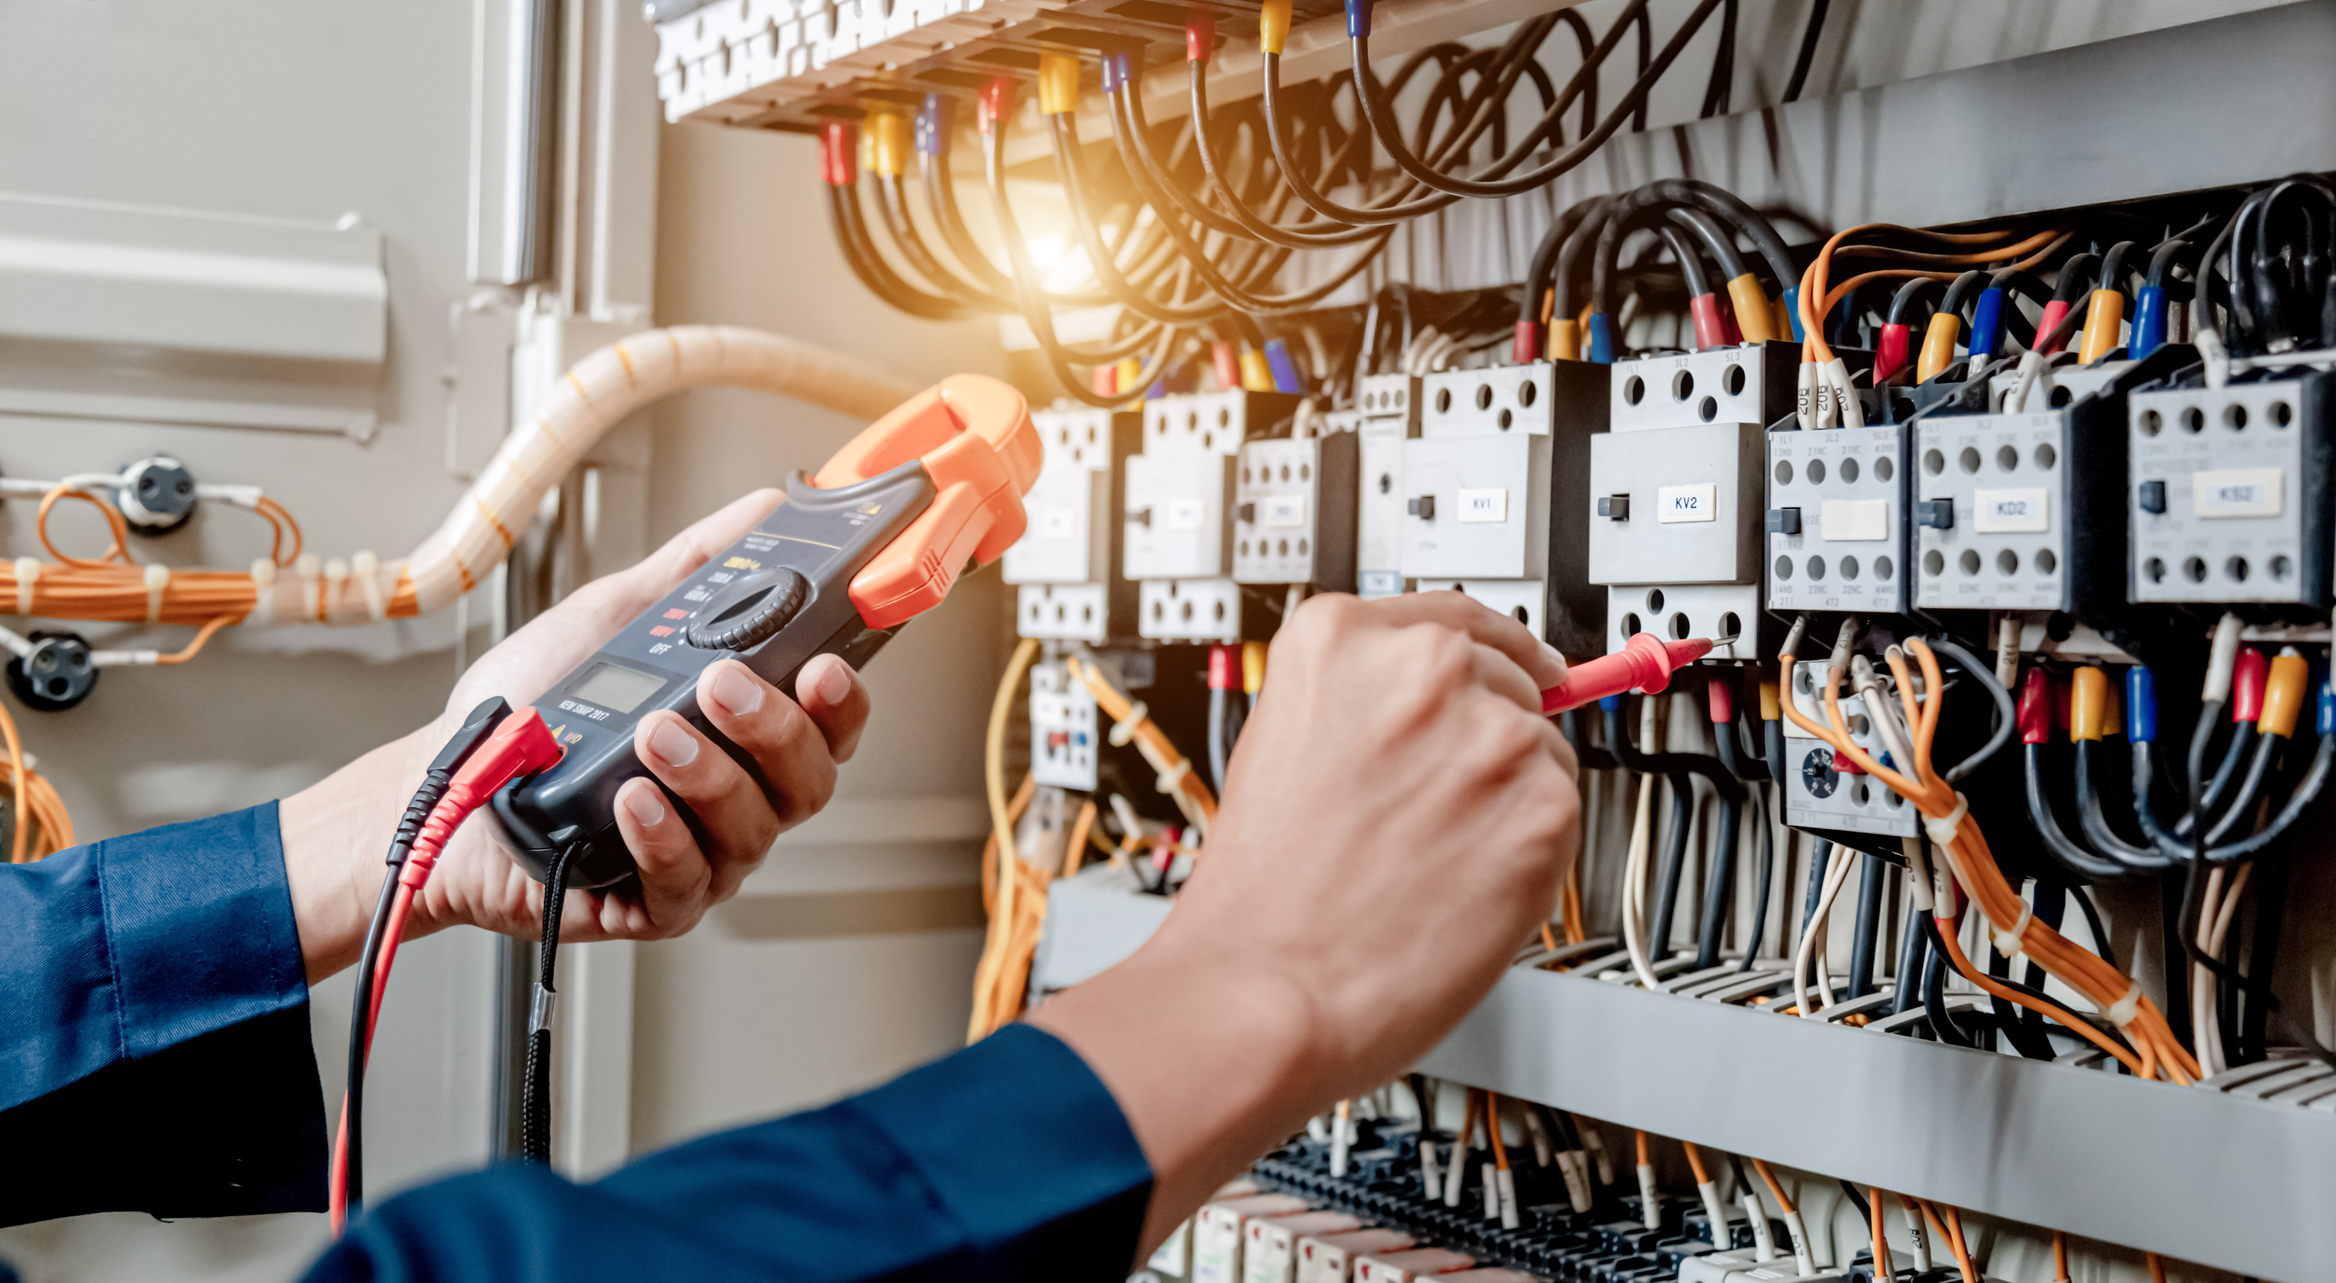 Painéis elétricos: saiba os principais tipos e como garantir a segurança durante a manutenção